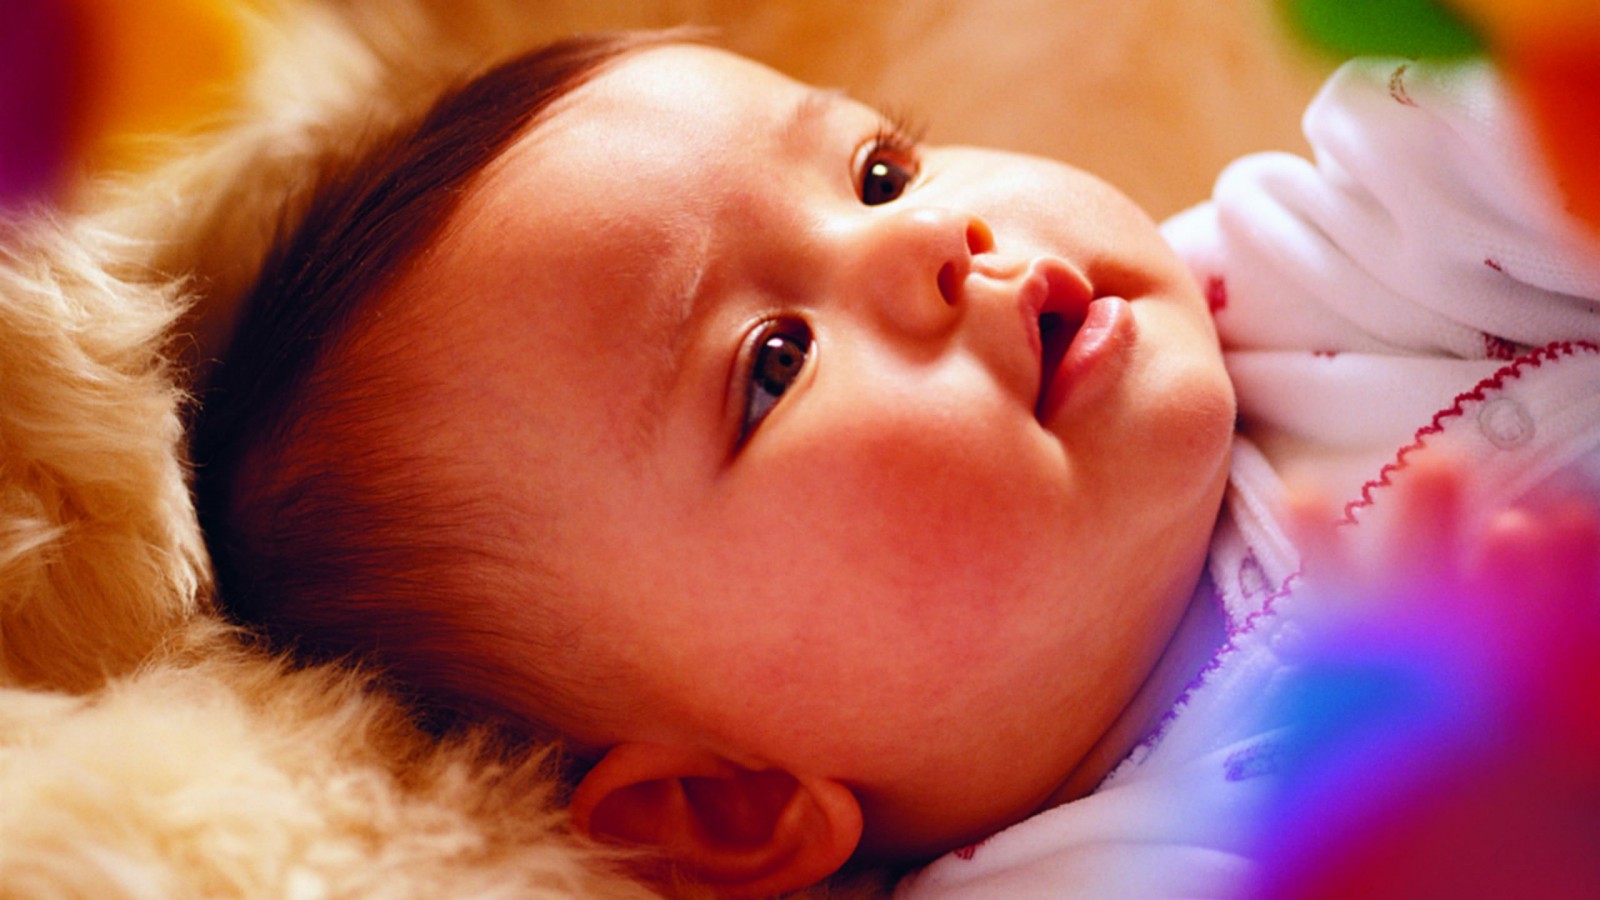 Cute Baby HD Wallpapers - WallpaperSafari